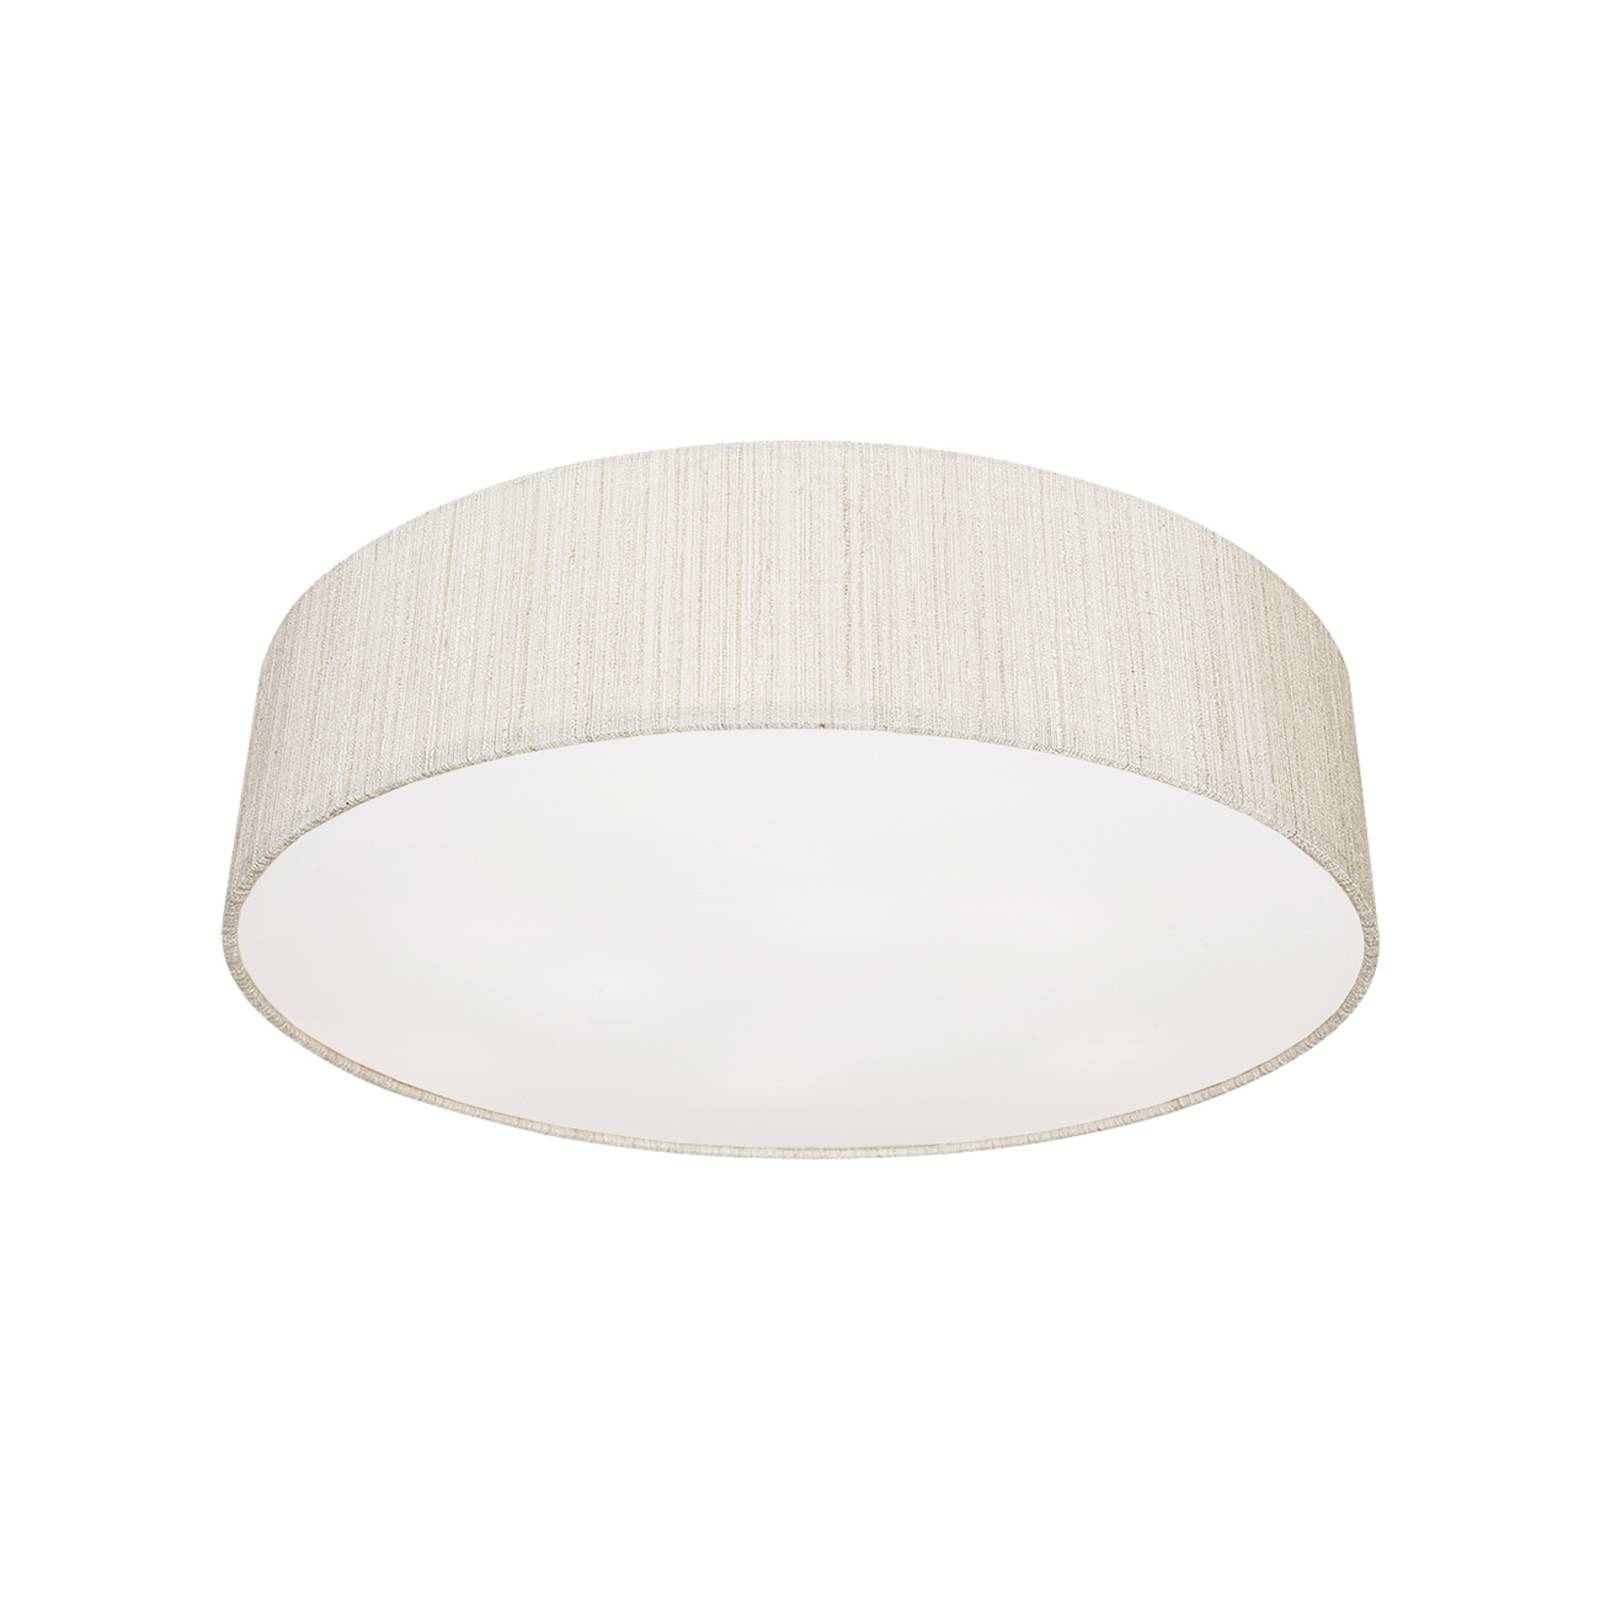 Plafondlamp Turda, Ø 50 cm, wit